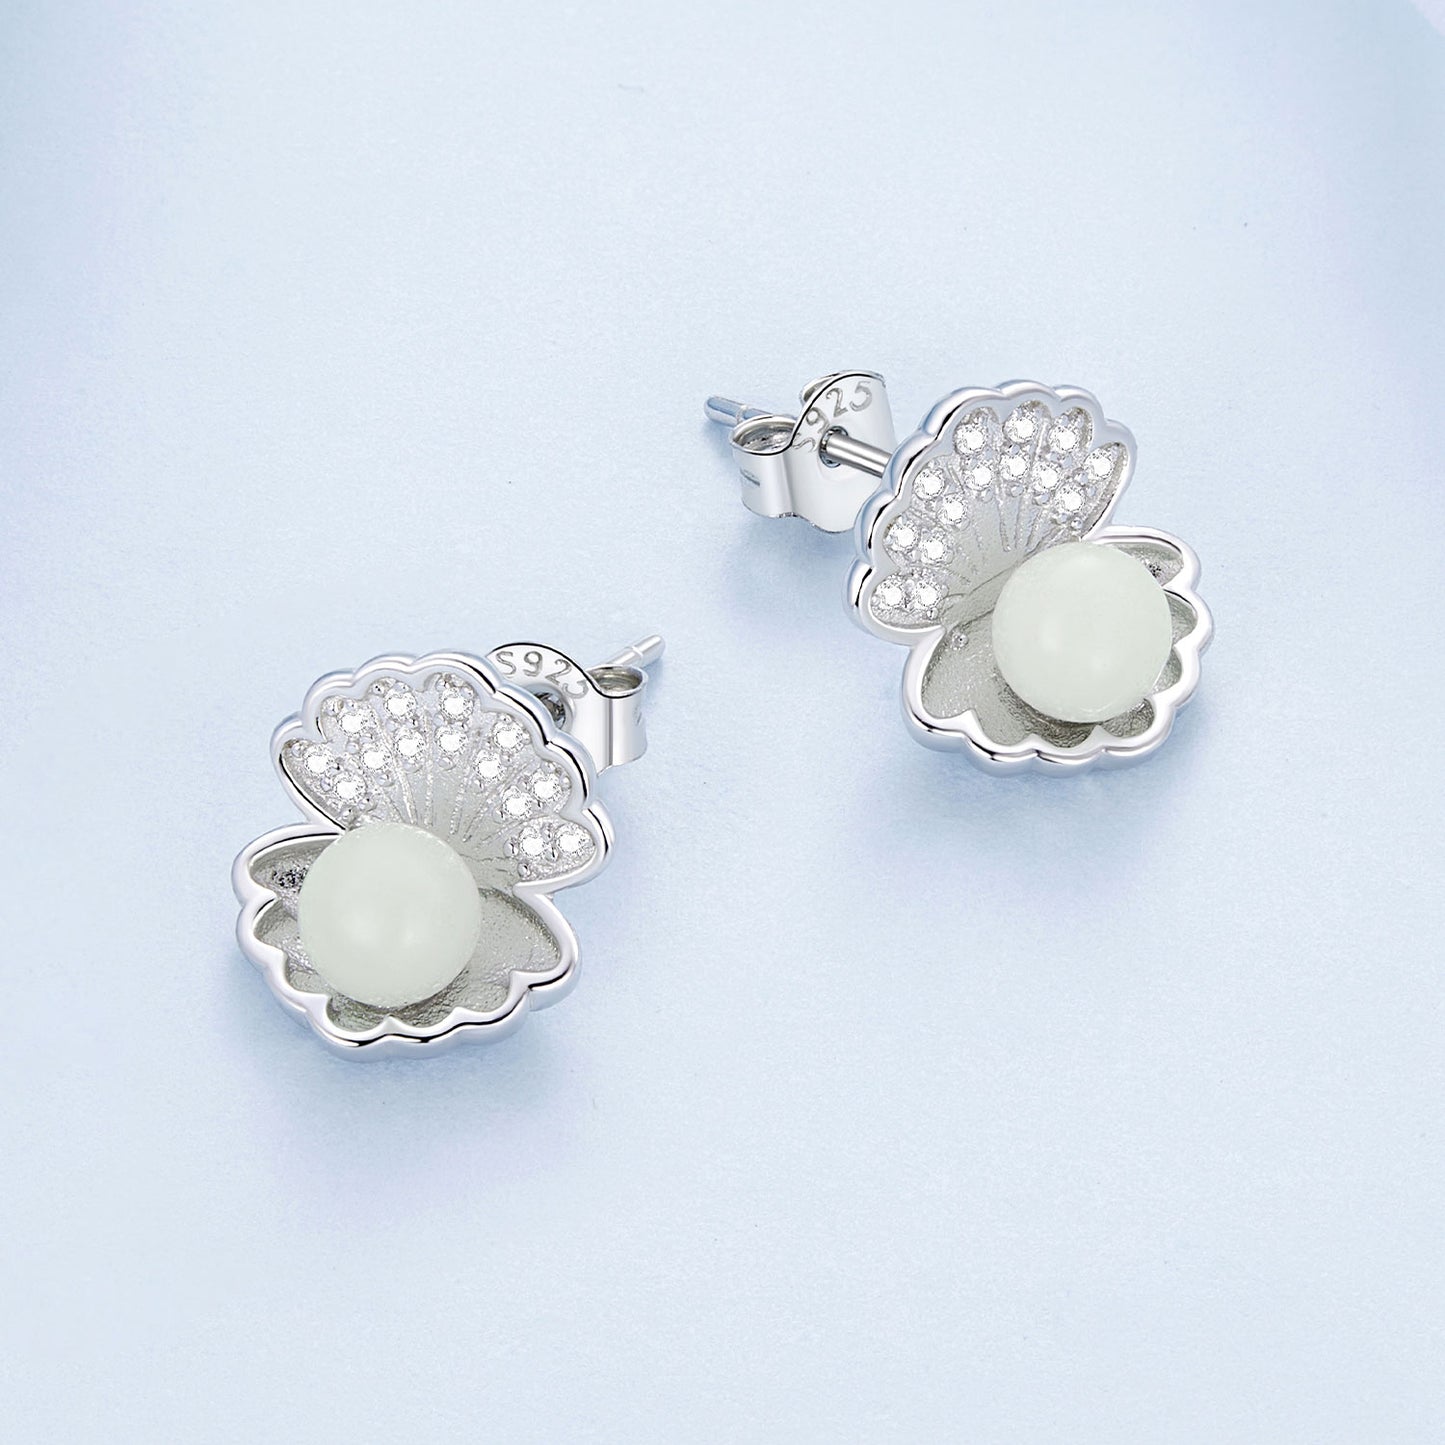 Shell earrings,  92.5% Sterling Silver, Luminous stone ear stud, Zircon earrings